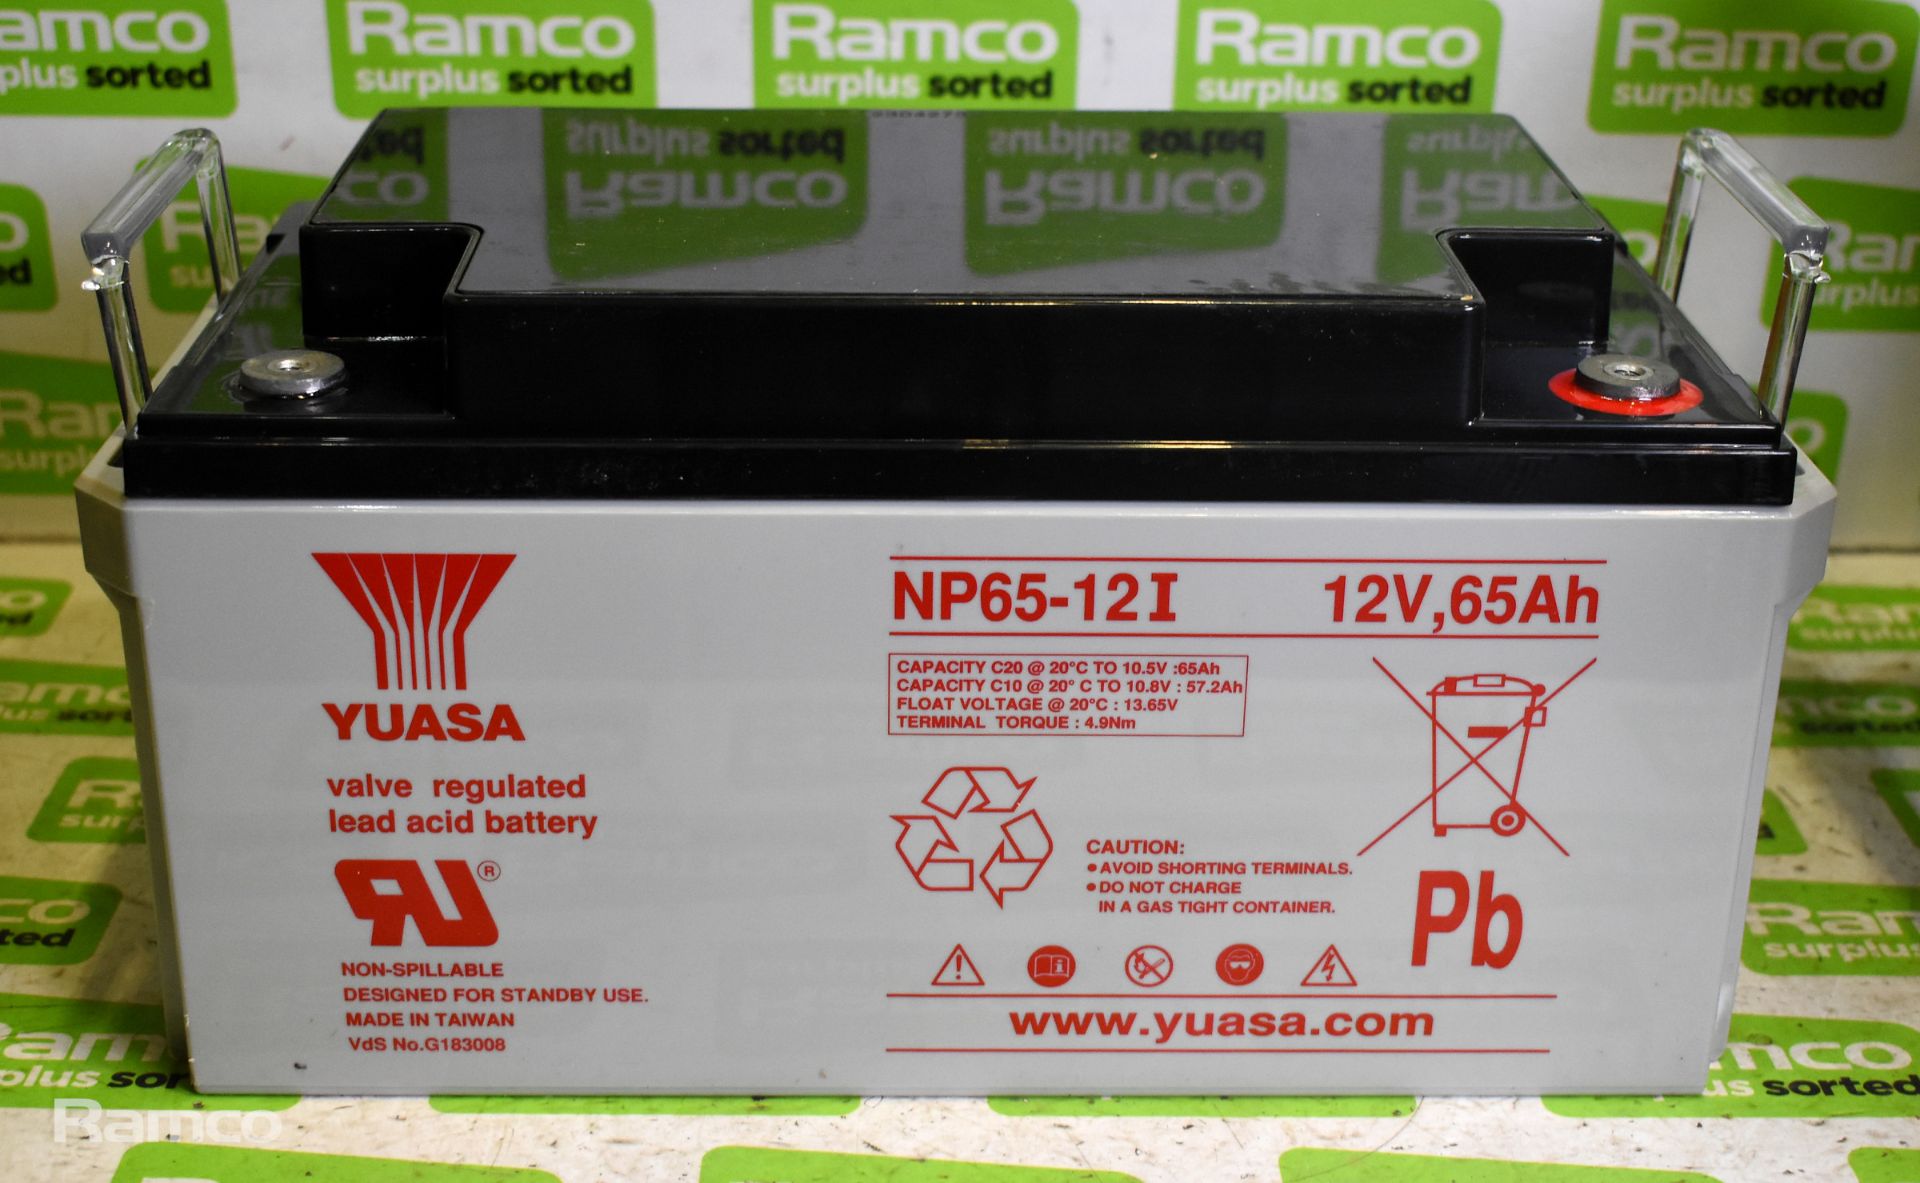 YUASA NP65-12i battery